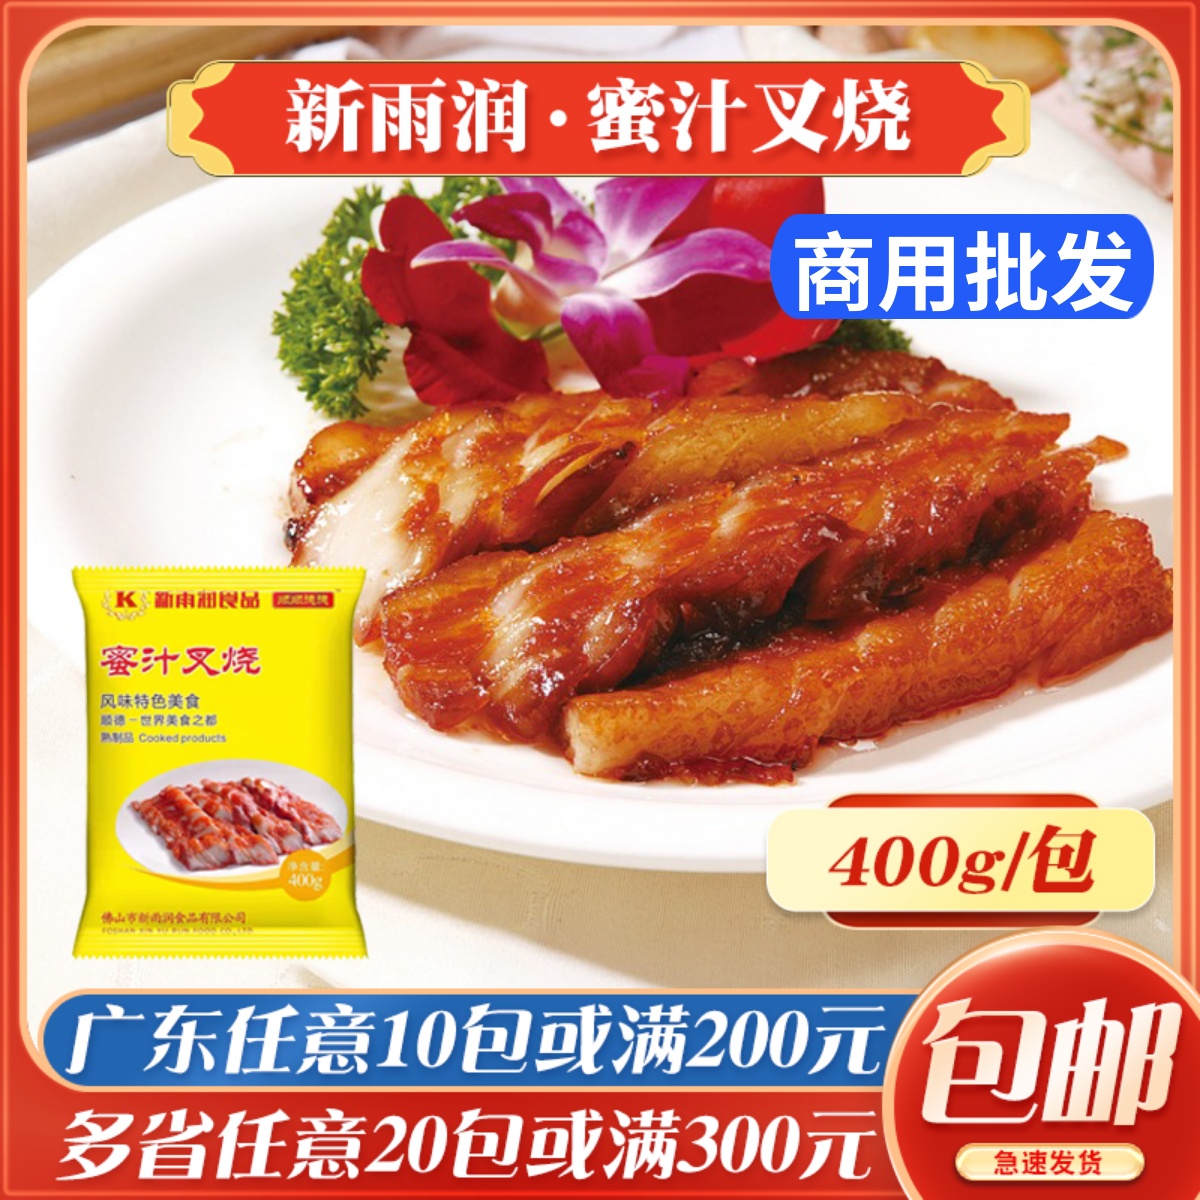 新雨润蜜汁叉烧腌制猪肉调味广东叉烧肉快餐外卖冷冻食品成品400g